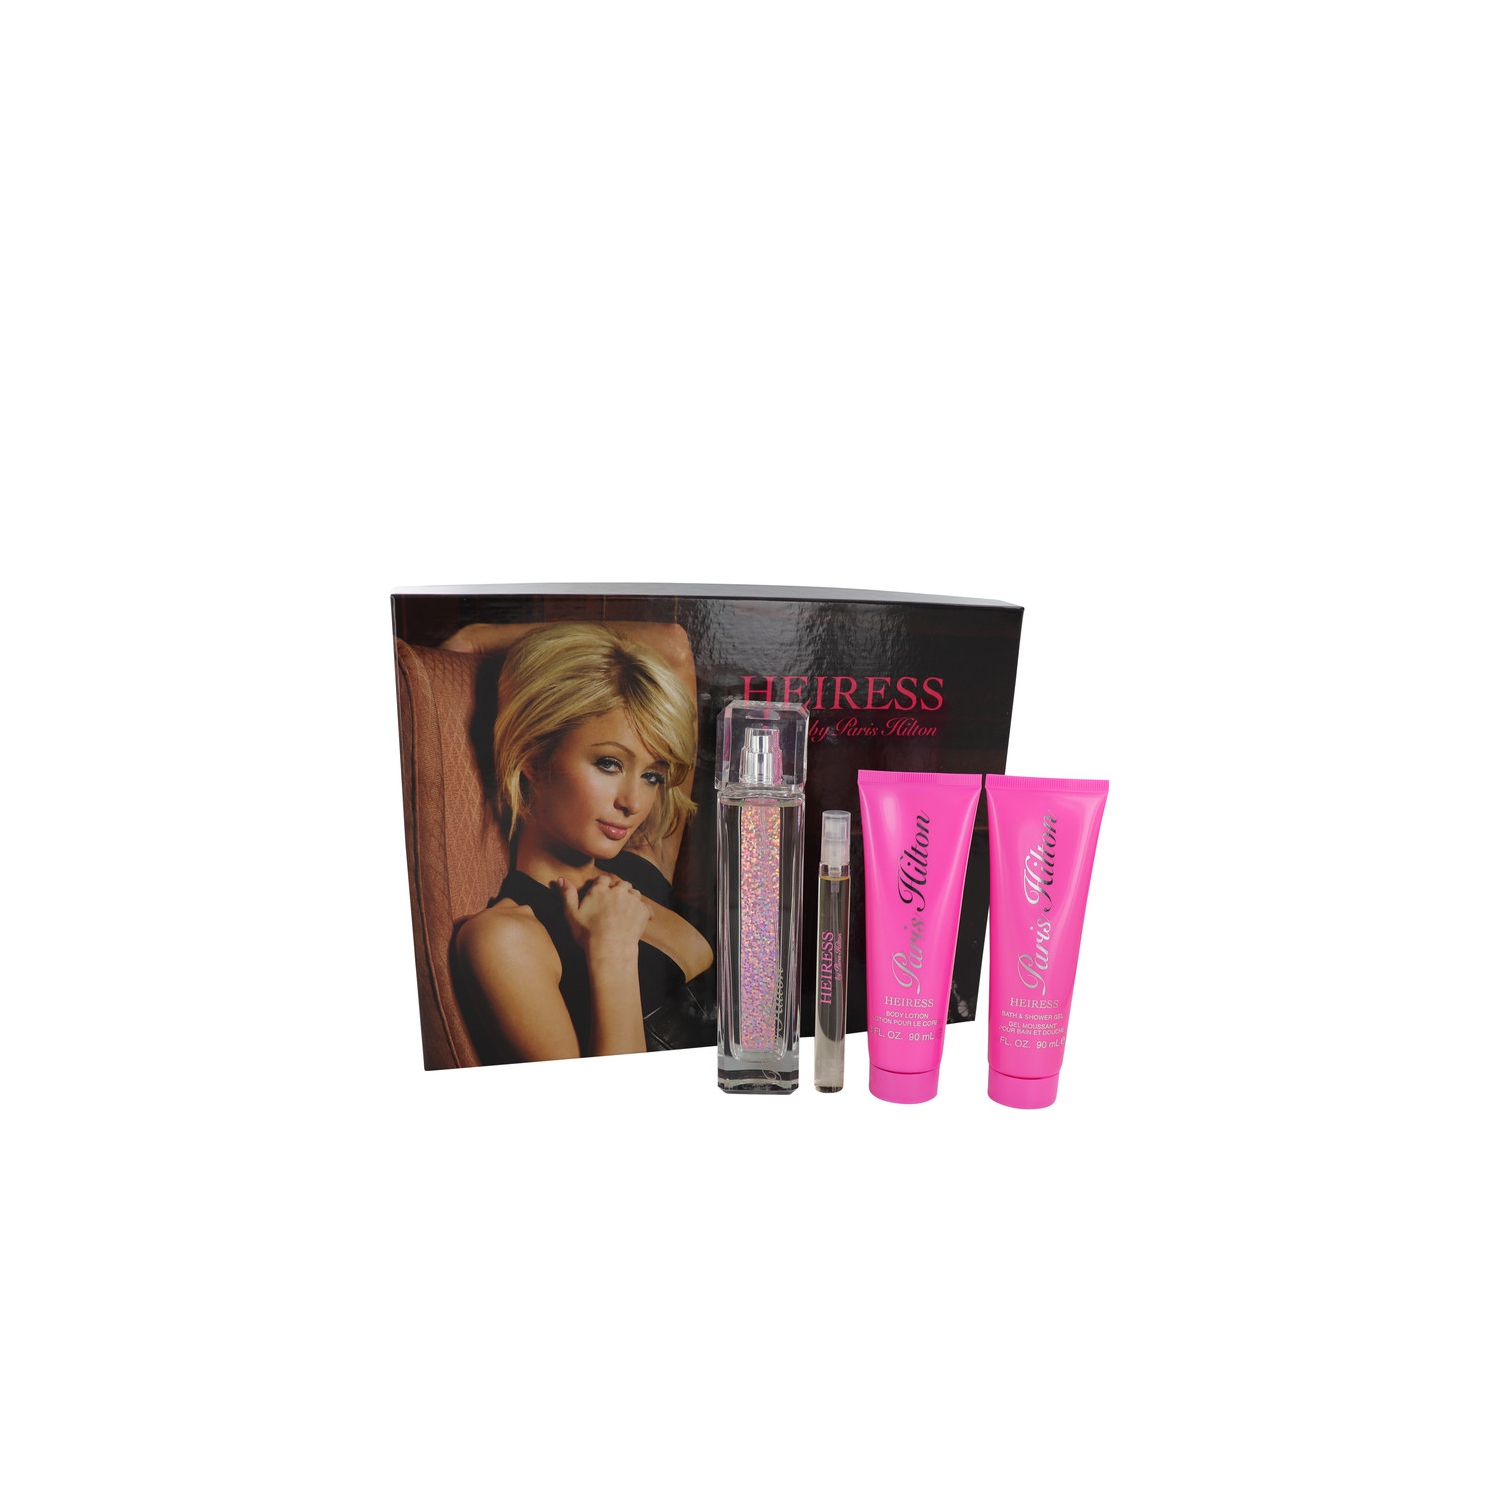 Heiress by Paris Hilton for Women - 4 Pc Gift Set 3.4oz EDP Spray, 0.34oz EDP Spray, 3oz Body Lotion